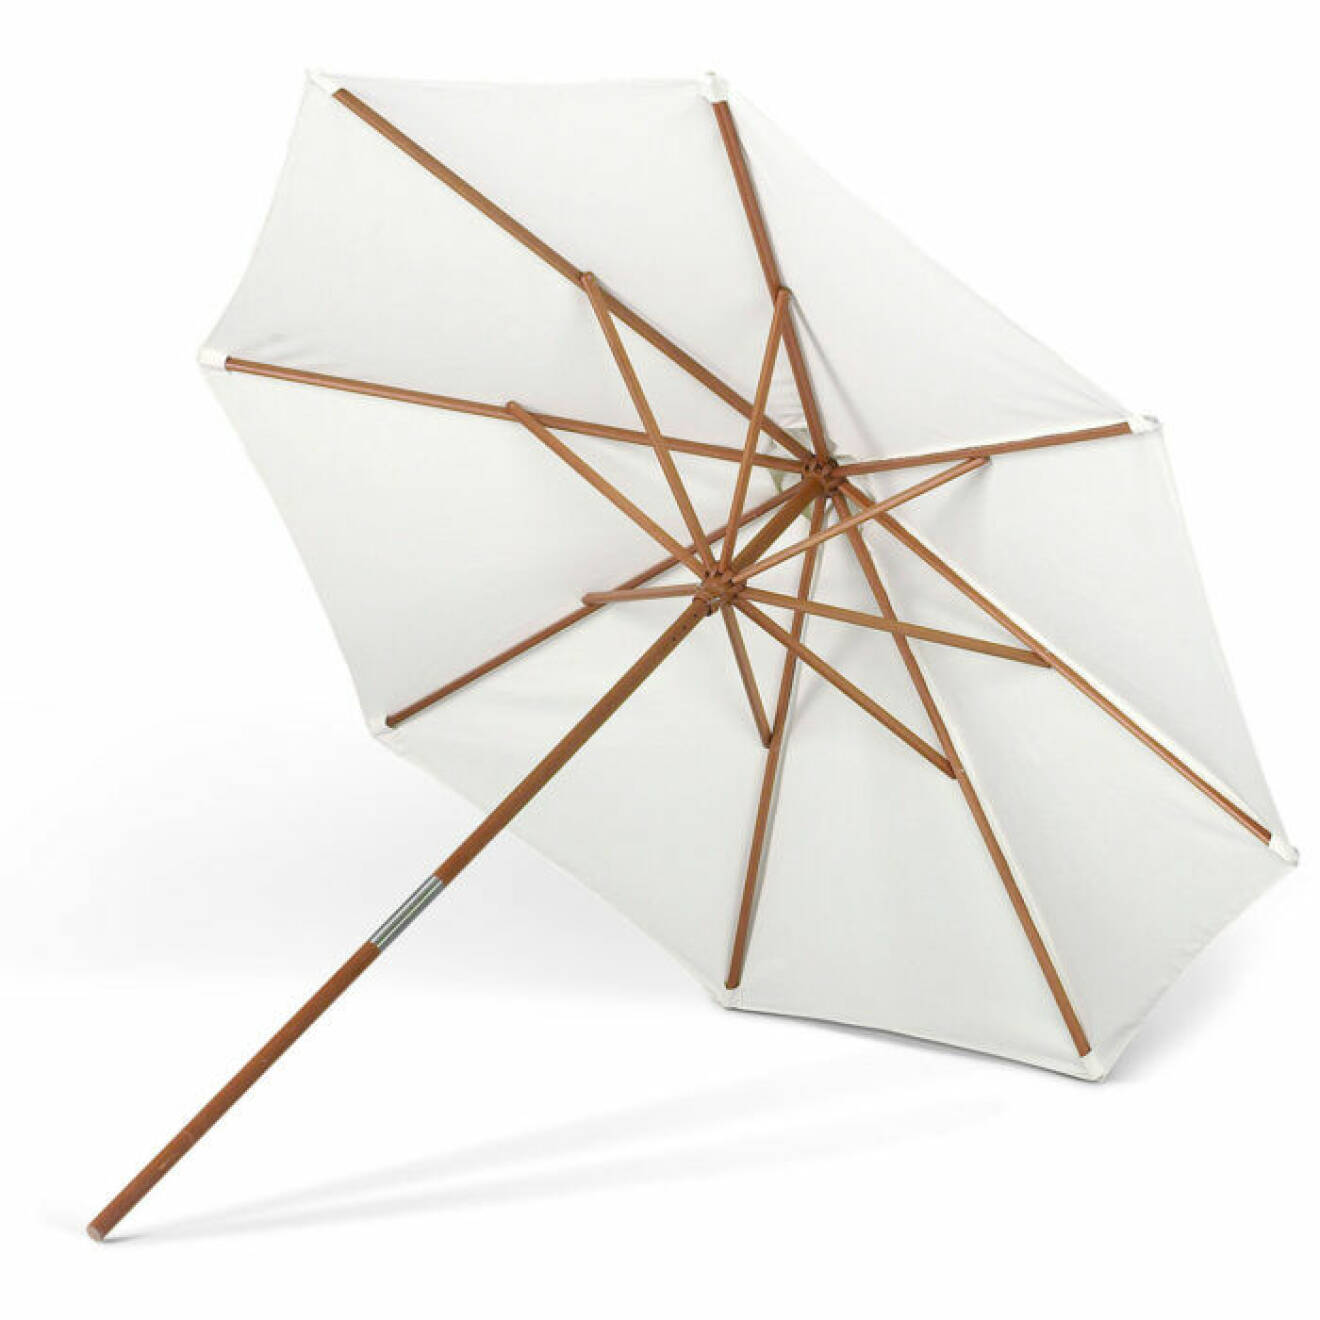 Snyggt parasoll från Skagerak